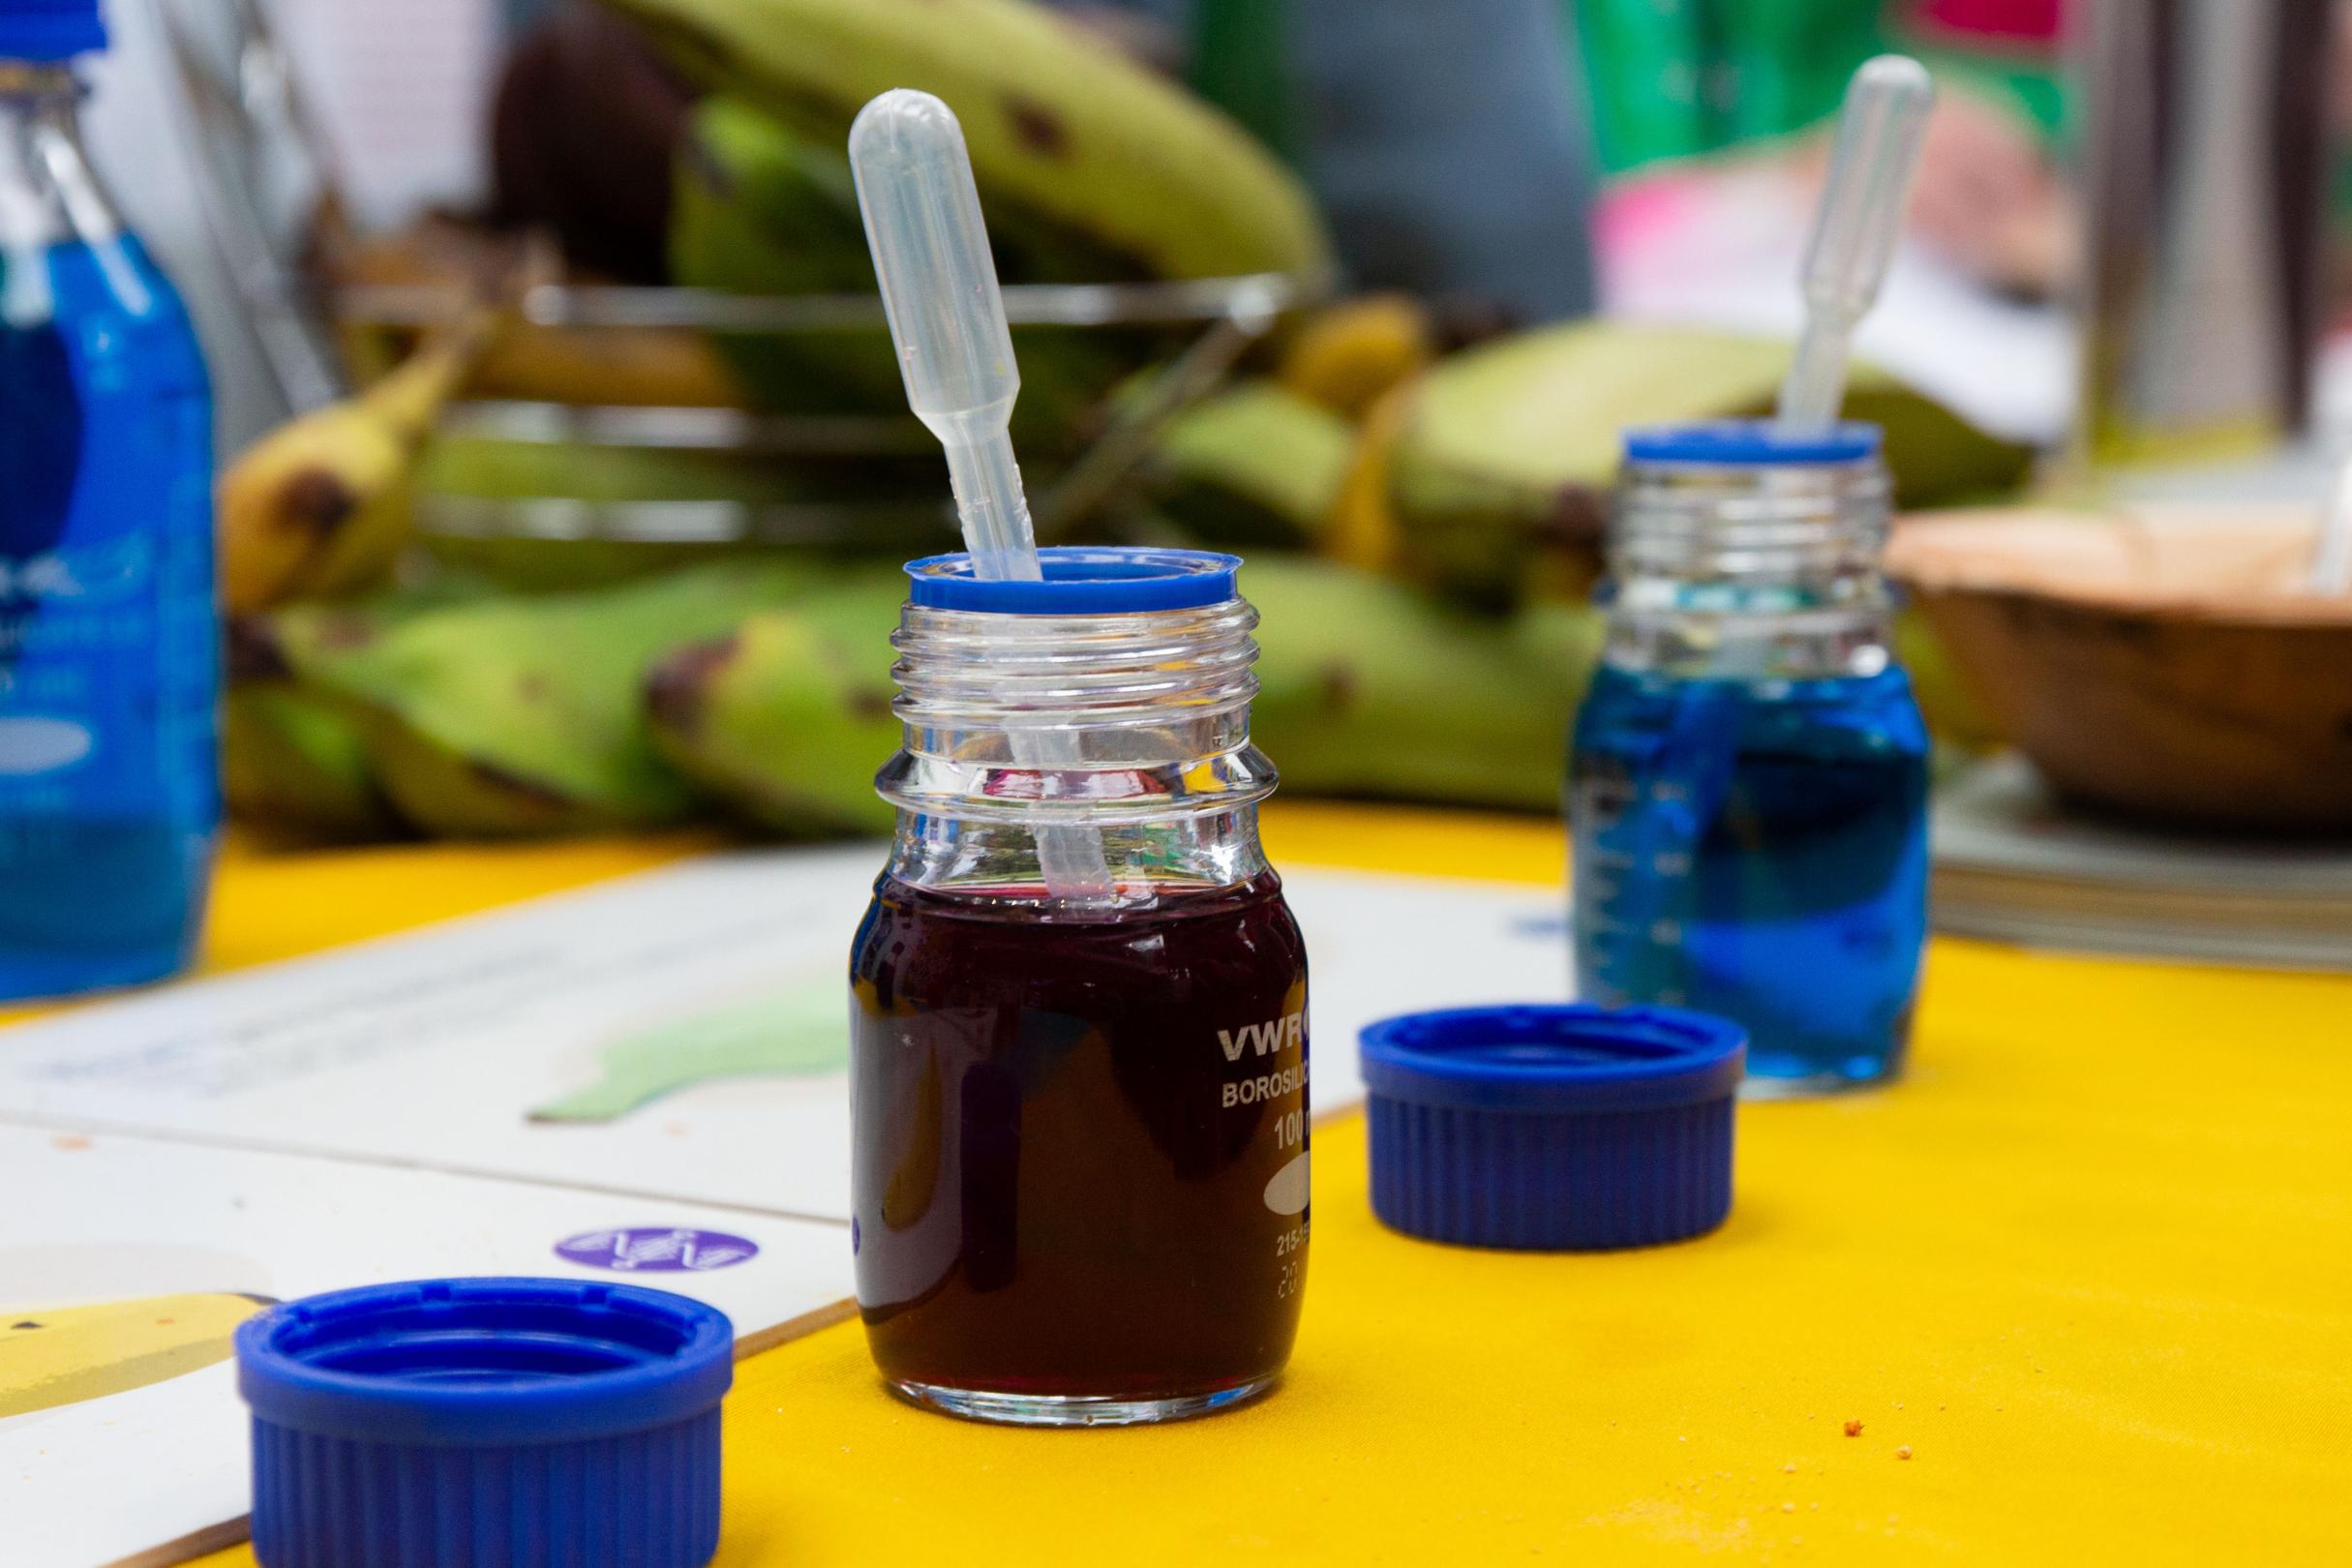 Scientific jars with colourful liquids in 